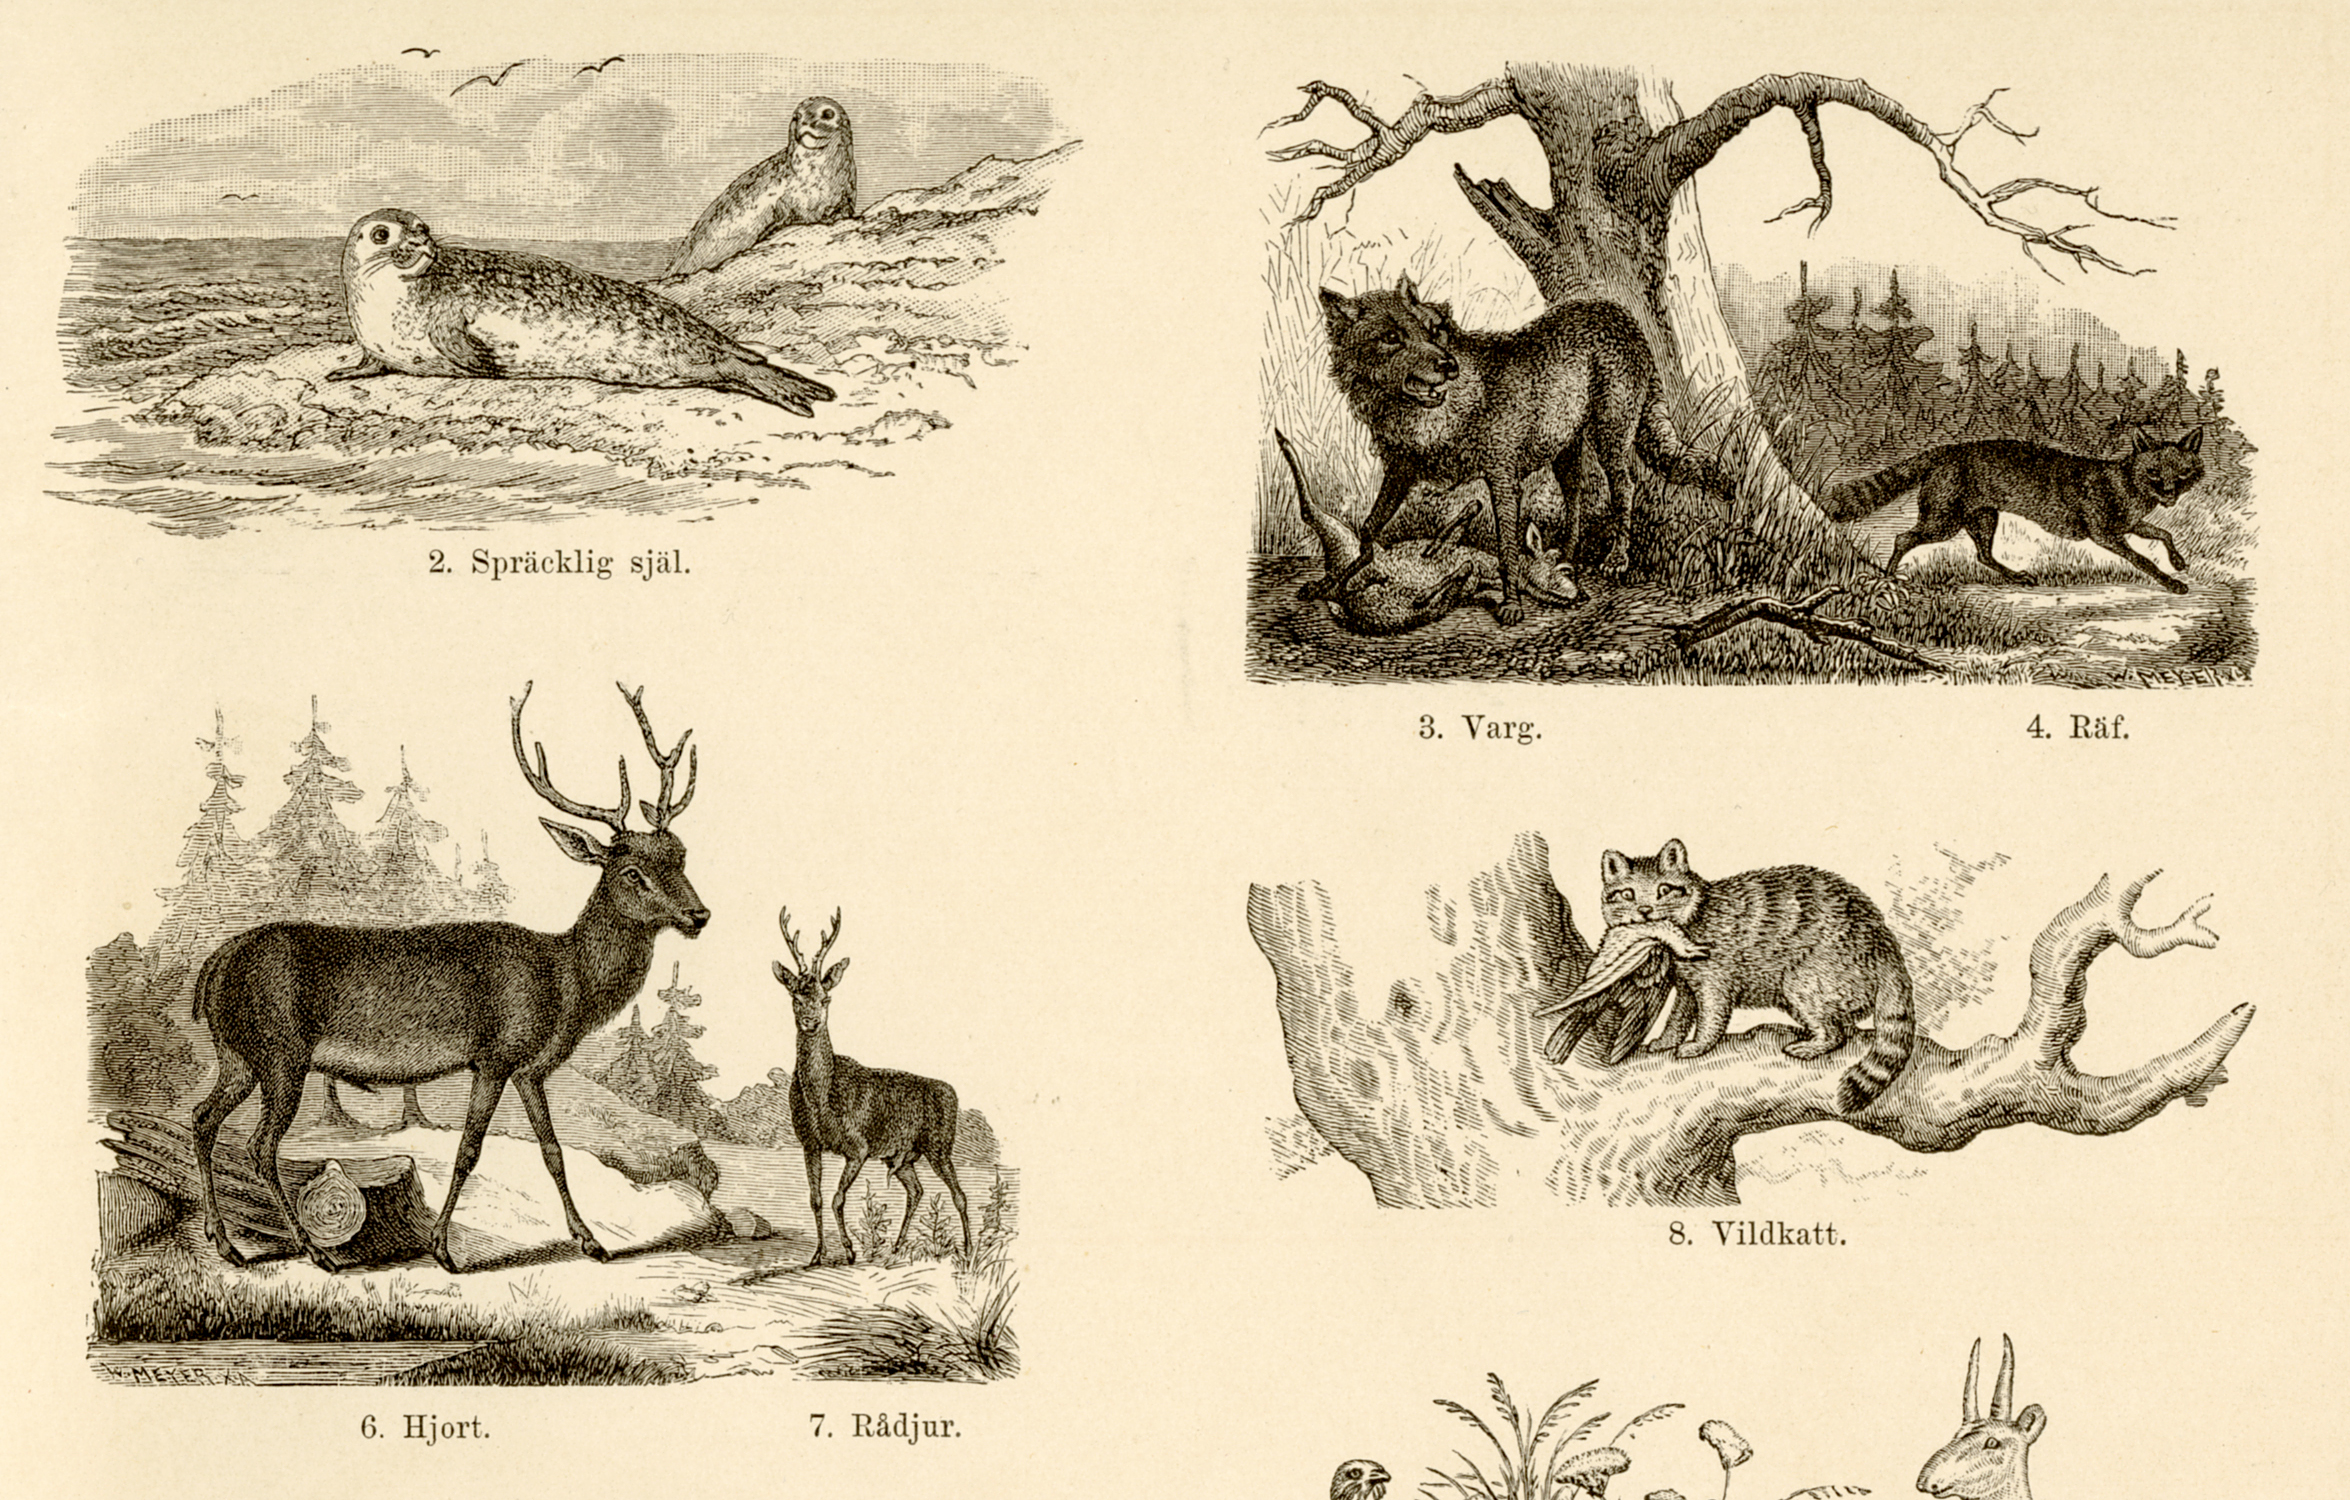 5. Naturhistorisk och etnografisk atlas (1881)